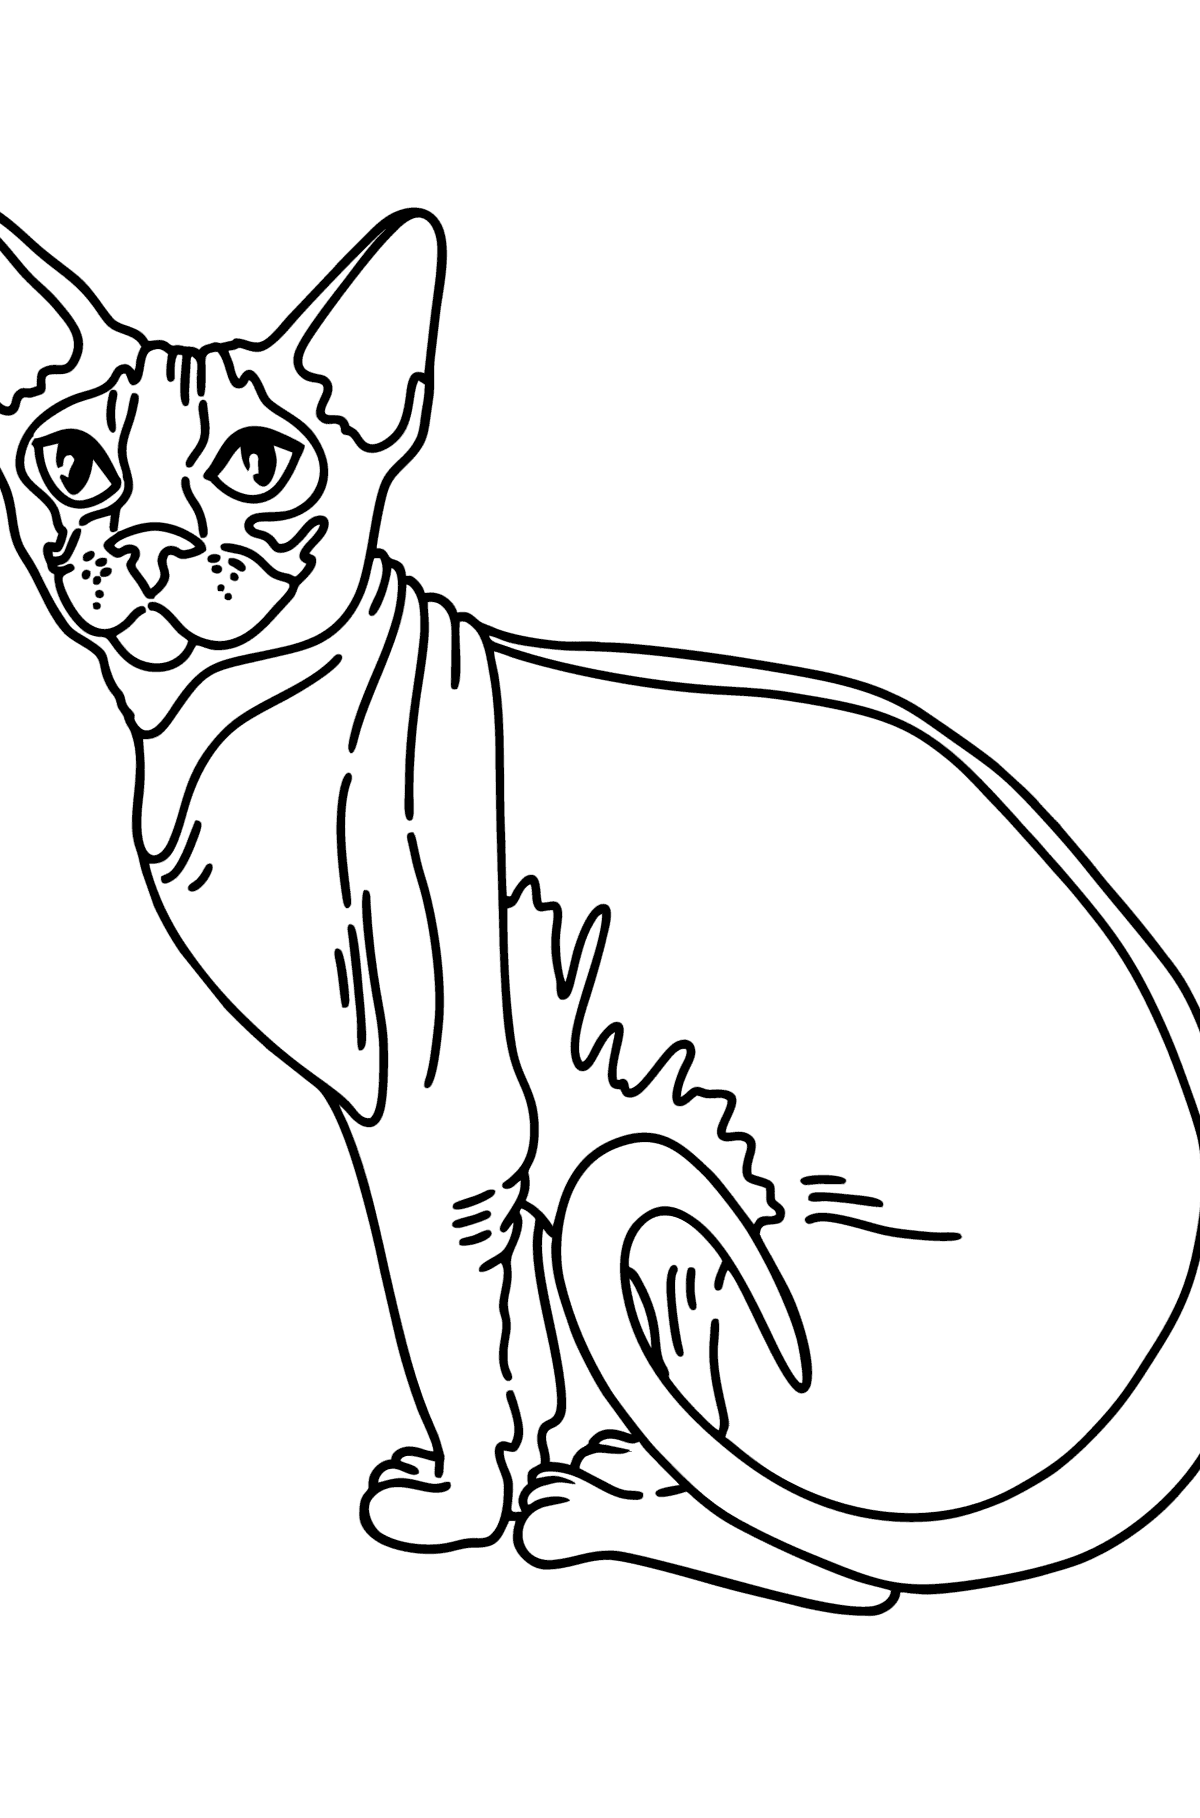 Boyama sayfası Sfenks kedi - Boyamalar çocuklar için